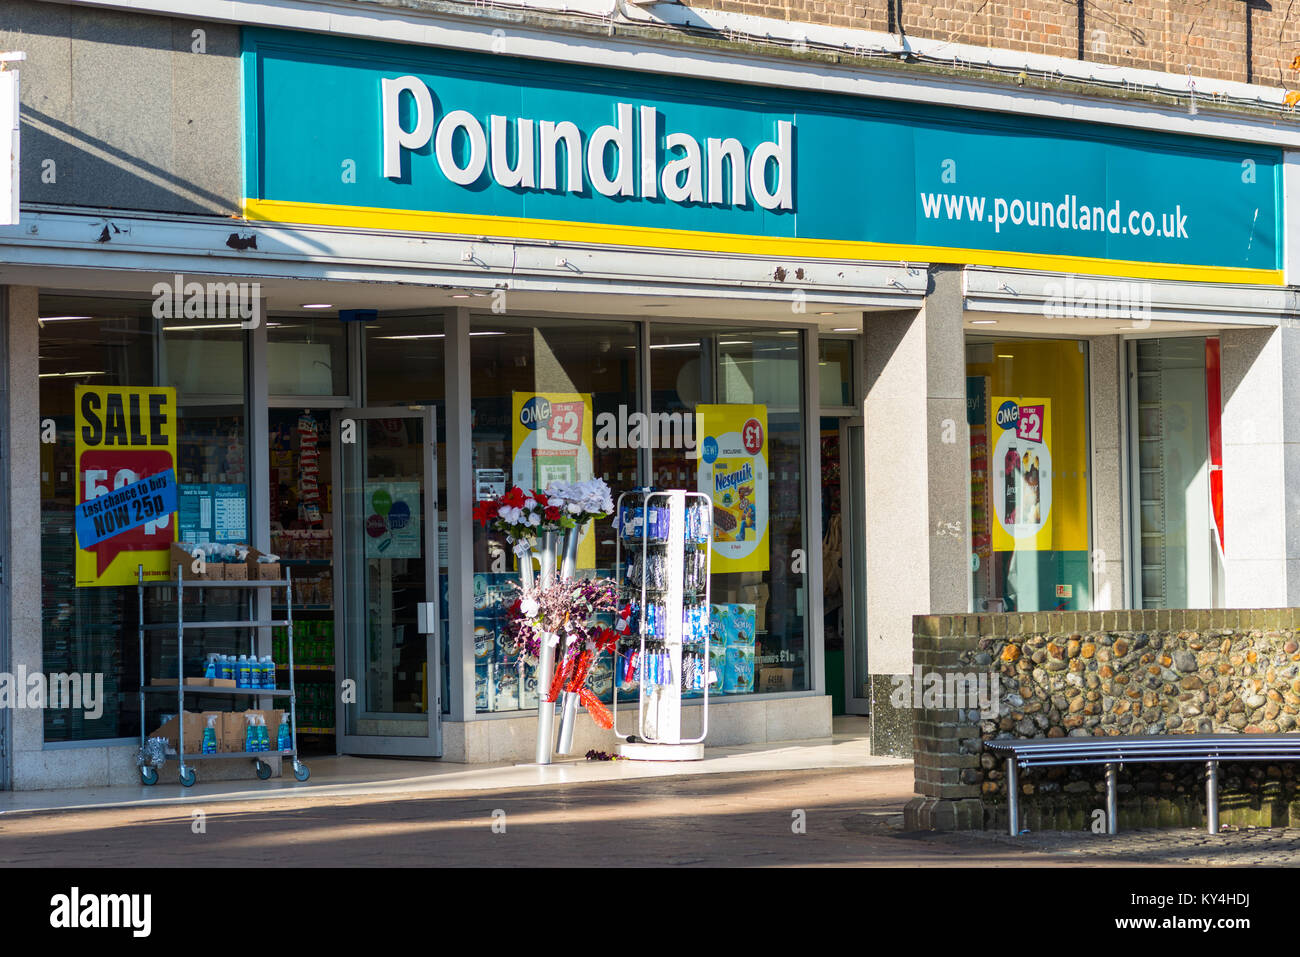 Poundland storefront in Bury St Edmunds, Suffolk, England, UK. Stock Photo